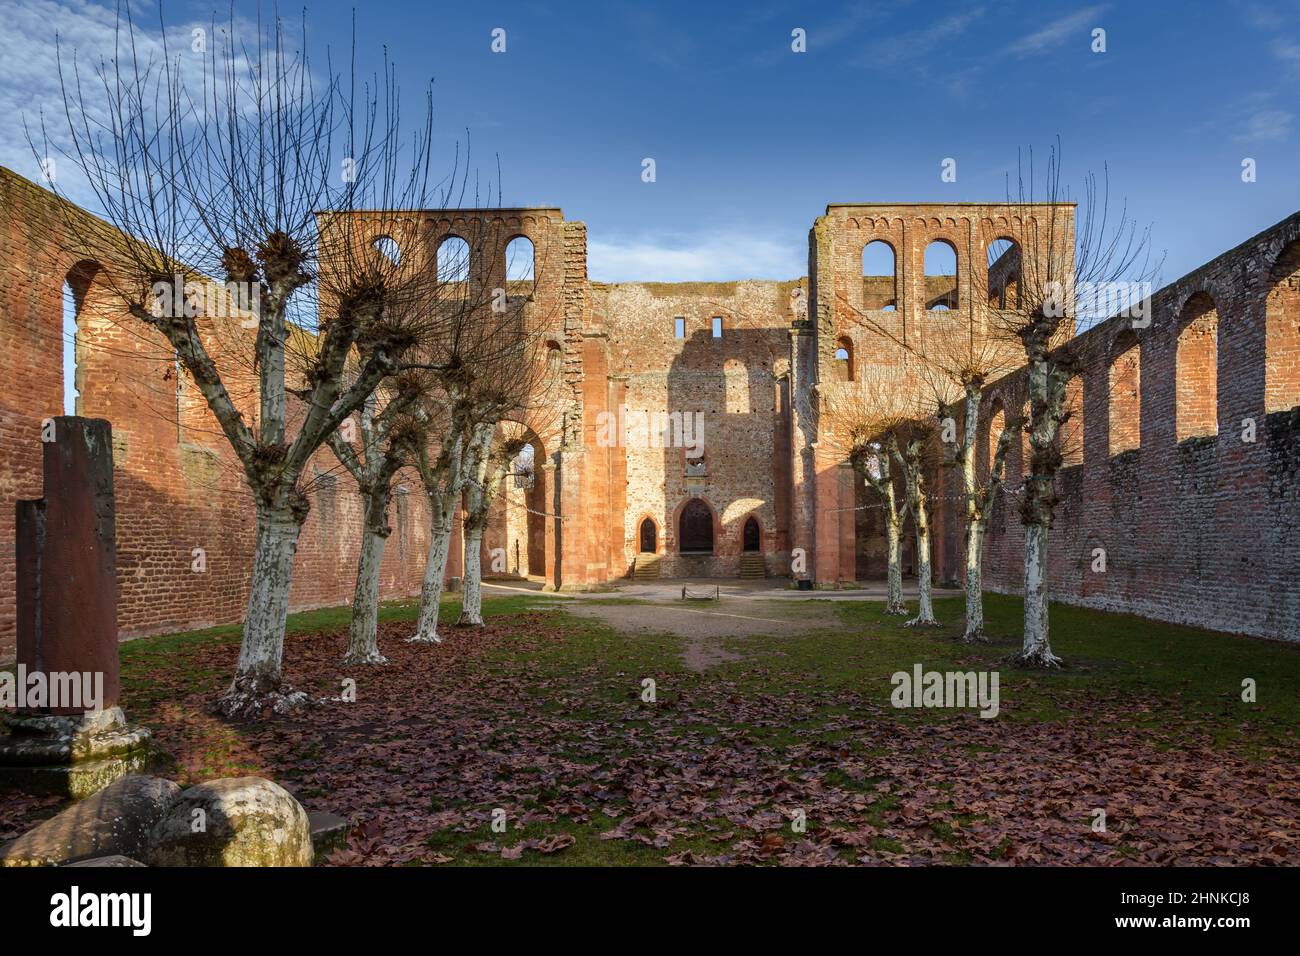 Inner courtyard of ruined monastery Limburg, Bad Duerkheim, Rhineland-Palatinate, Germany Stock Photo